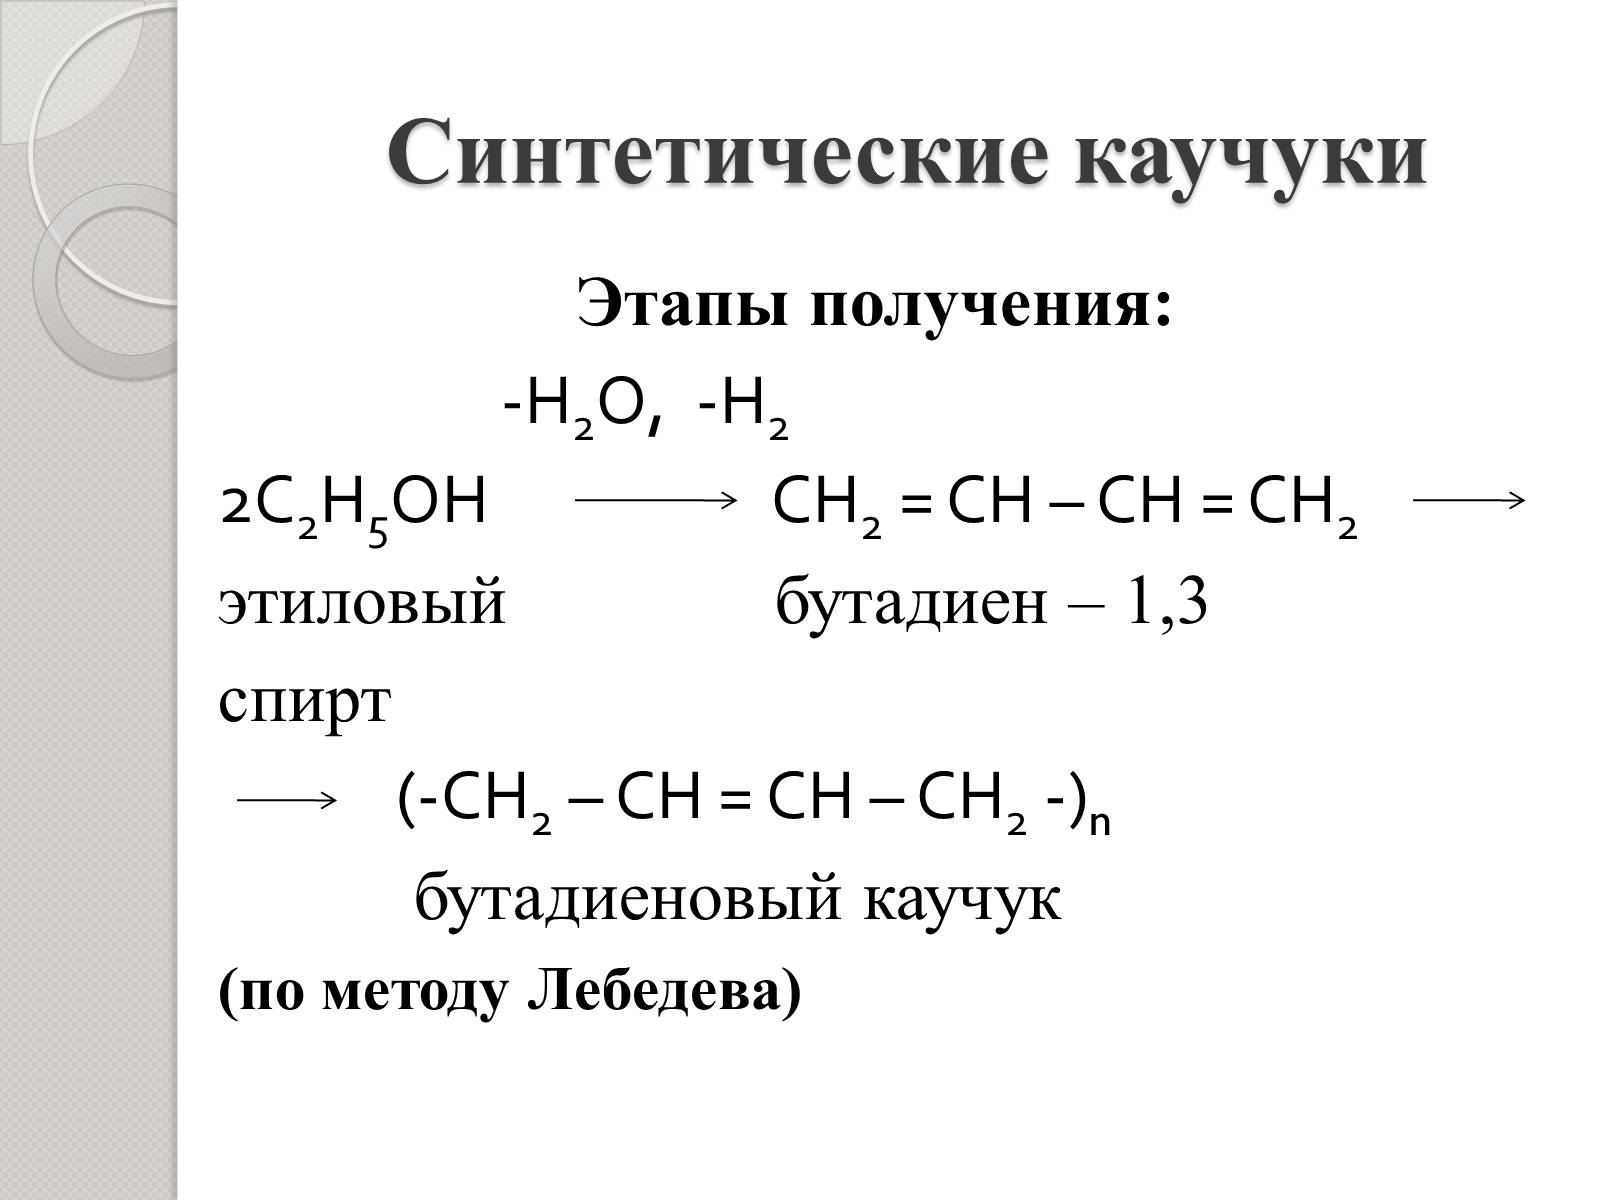 Реакция лебедева получение. Синтетический каучук бутадиеновый формула. Формула Лебедева синтетический каучук. Формула получения синтетического каучука. Реакция получения синтетического каучука.